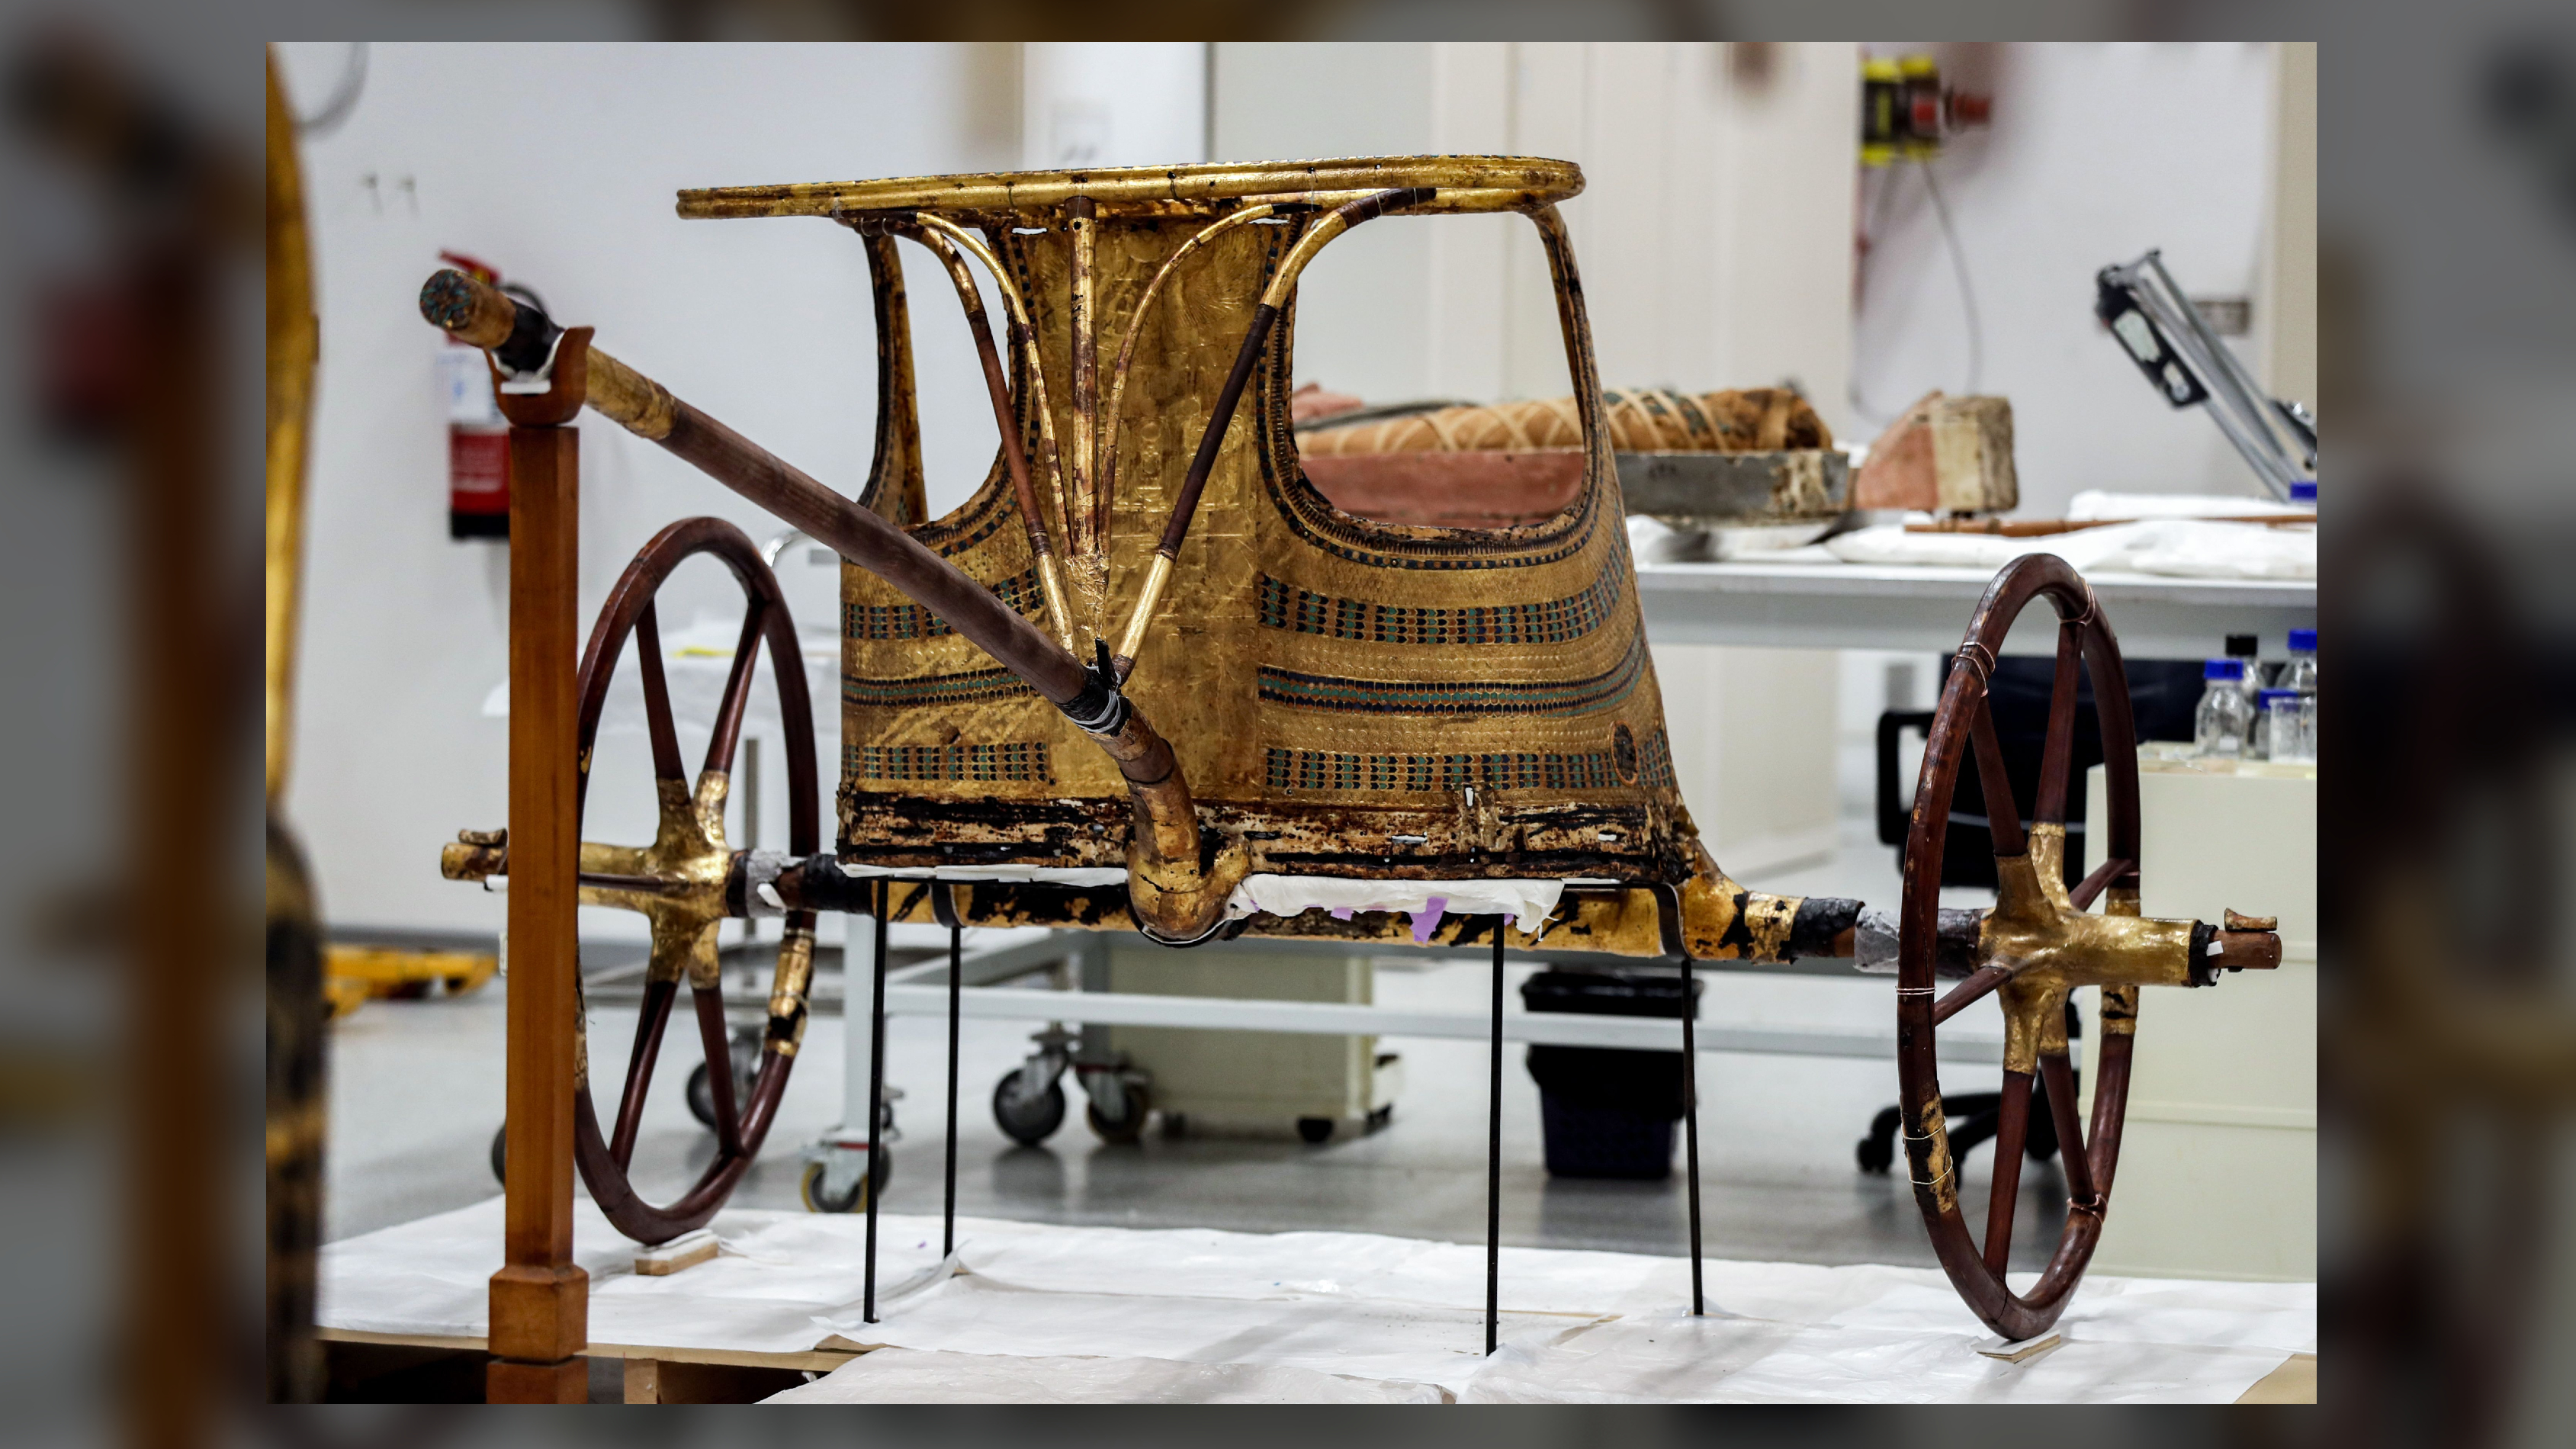 العربة الذهبية التي عثر عليها في مقبرة الملك توت عنخ آمون.  في هذه الصورة لعام 2019 ، تنتظر المركبة ترميمها في المتحف المصري الكبير بالجيزة.